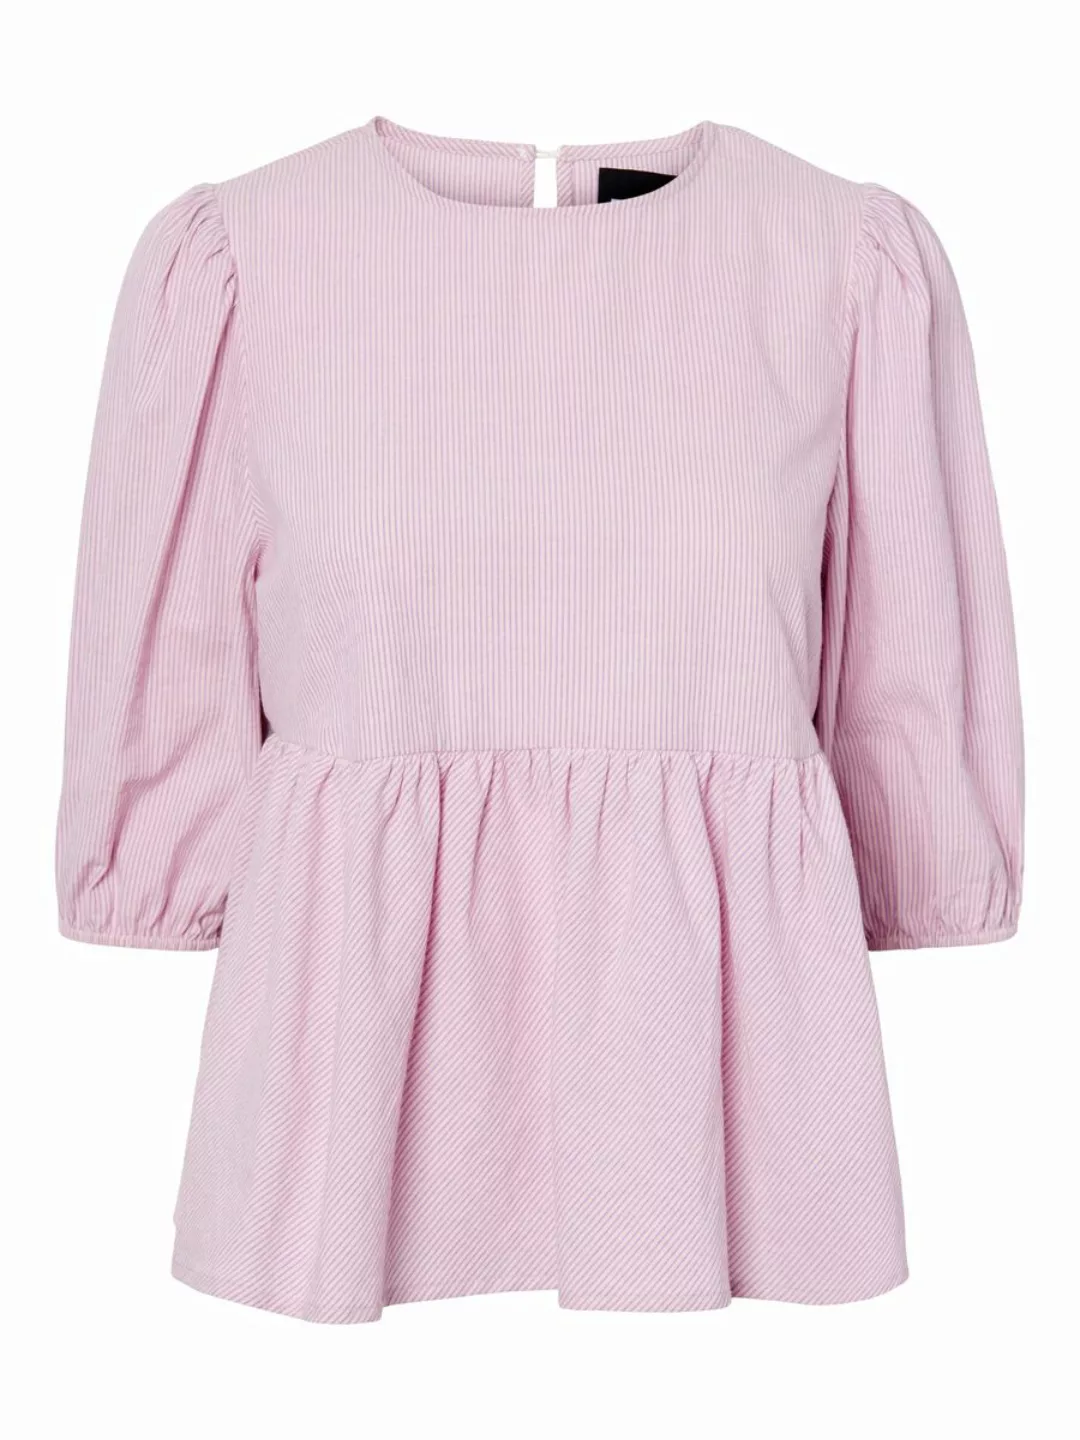 PIECES Pcjupi Bluse Damen Coloured günstig online kaufen